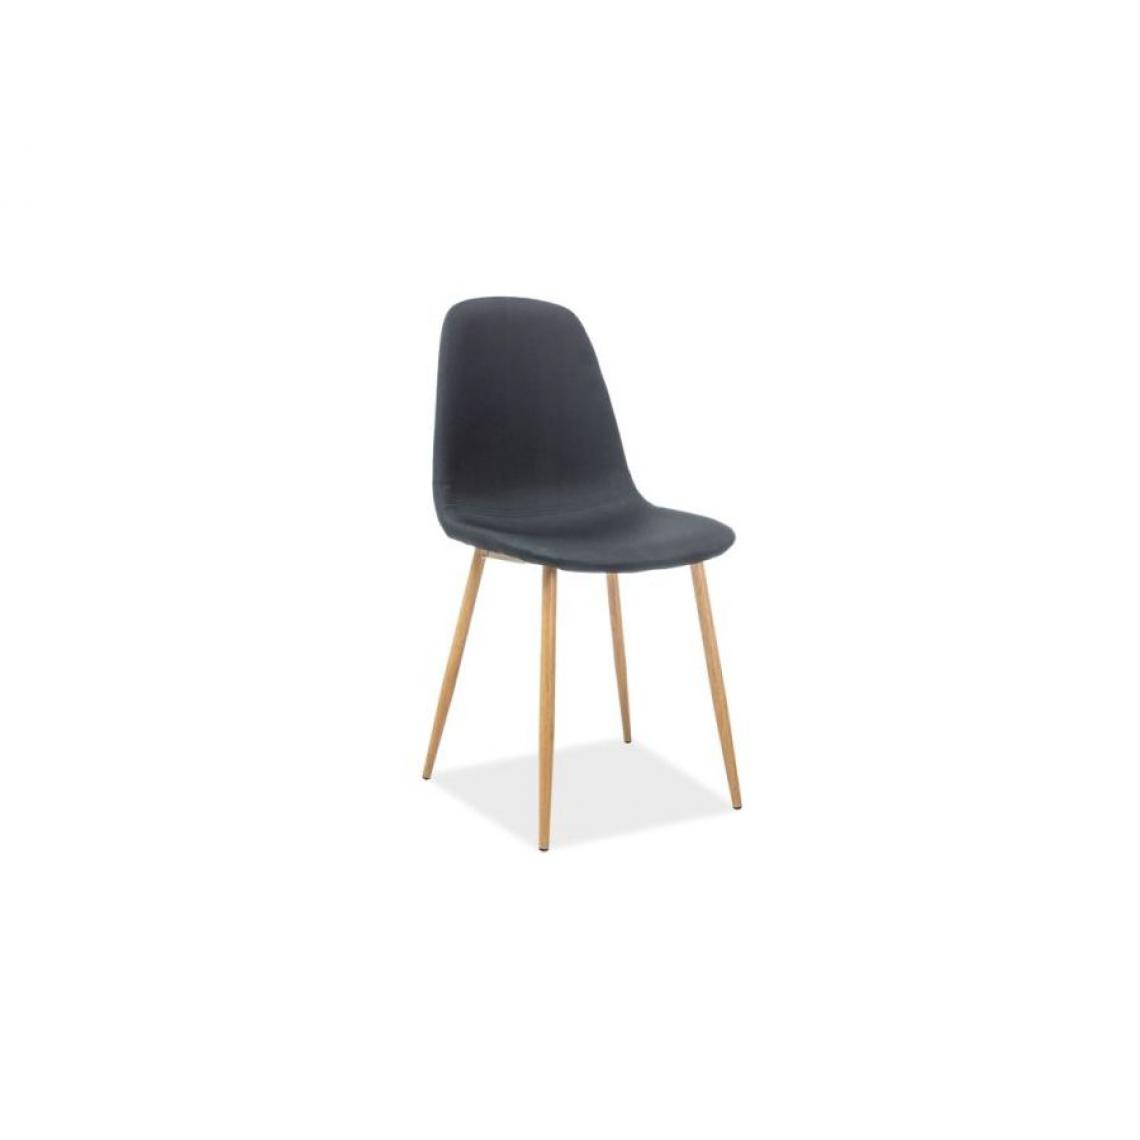 Hucoco - FRANZI | Chaise style scandinave avec base en métal | Salle à mager Salon Bureau | 86x44x39 cm | Tissu haute qualité - Noir - Chaises